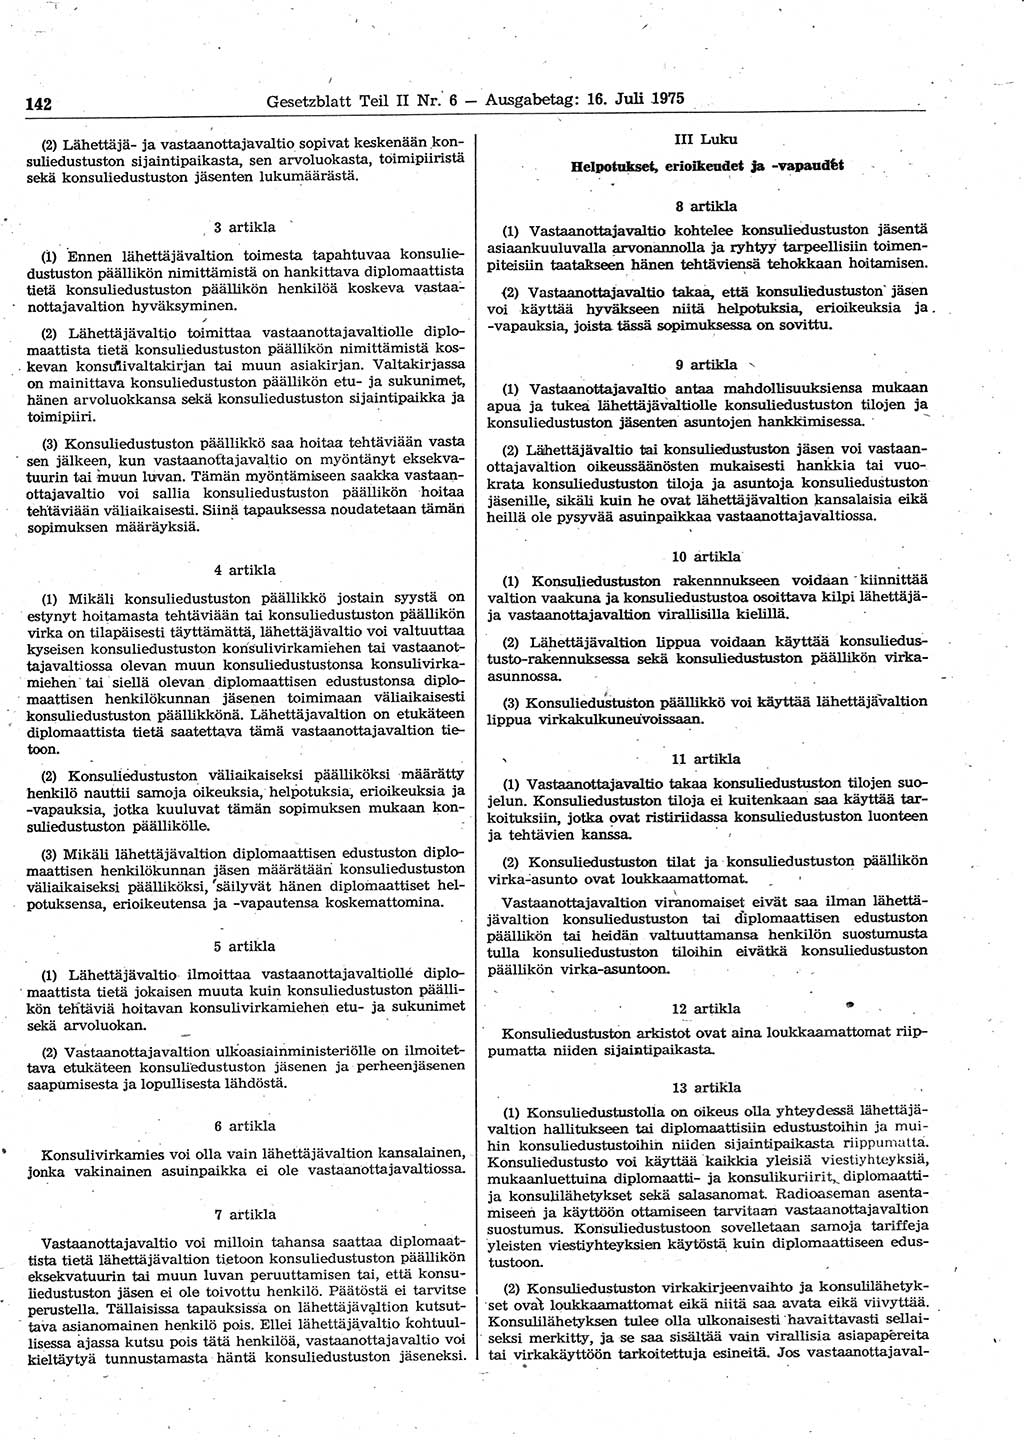 Gesetzblatt (GBl.) der Deutschen Demokratischen Republik (DDR) Teil ⅠⅠ 1975, Seite 142 (GBl. DDR ⅠⅠ 1975, S. 142)